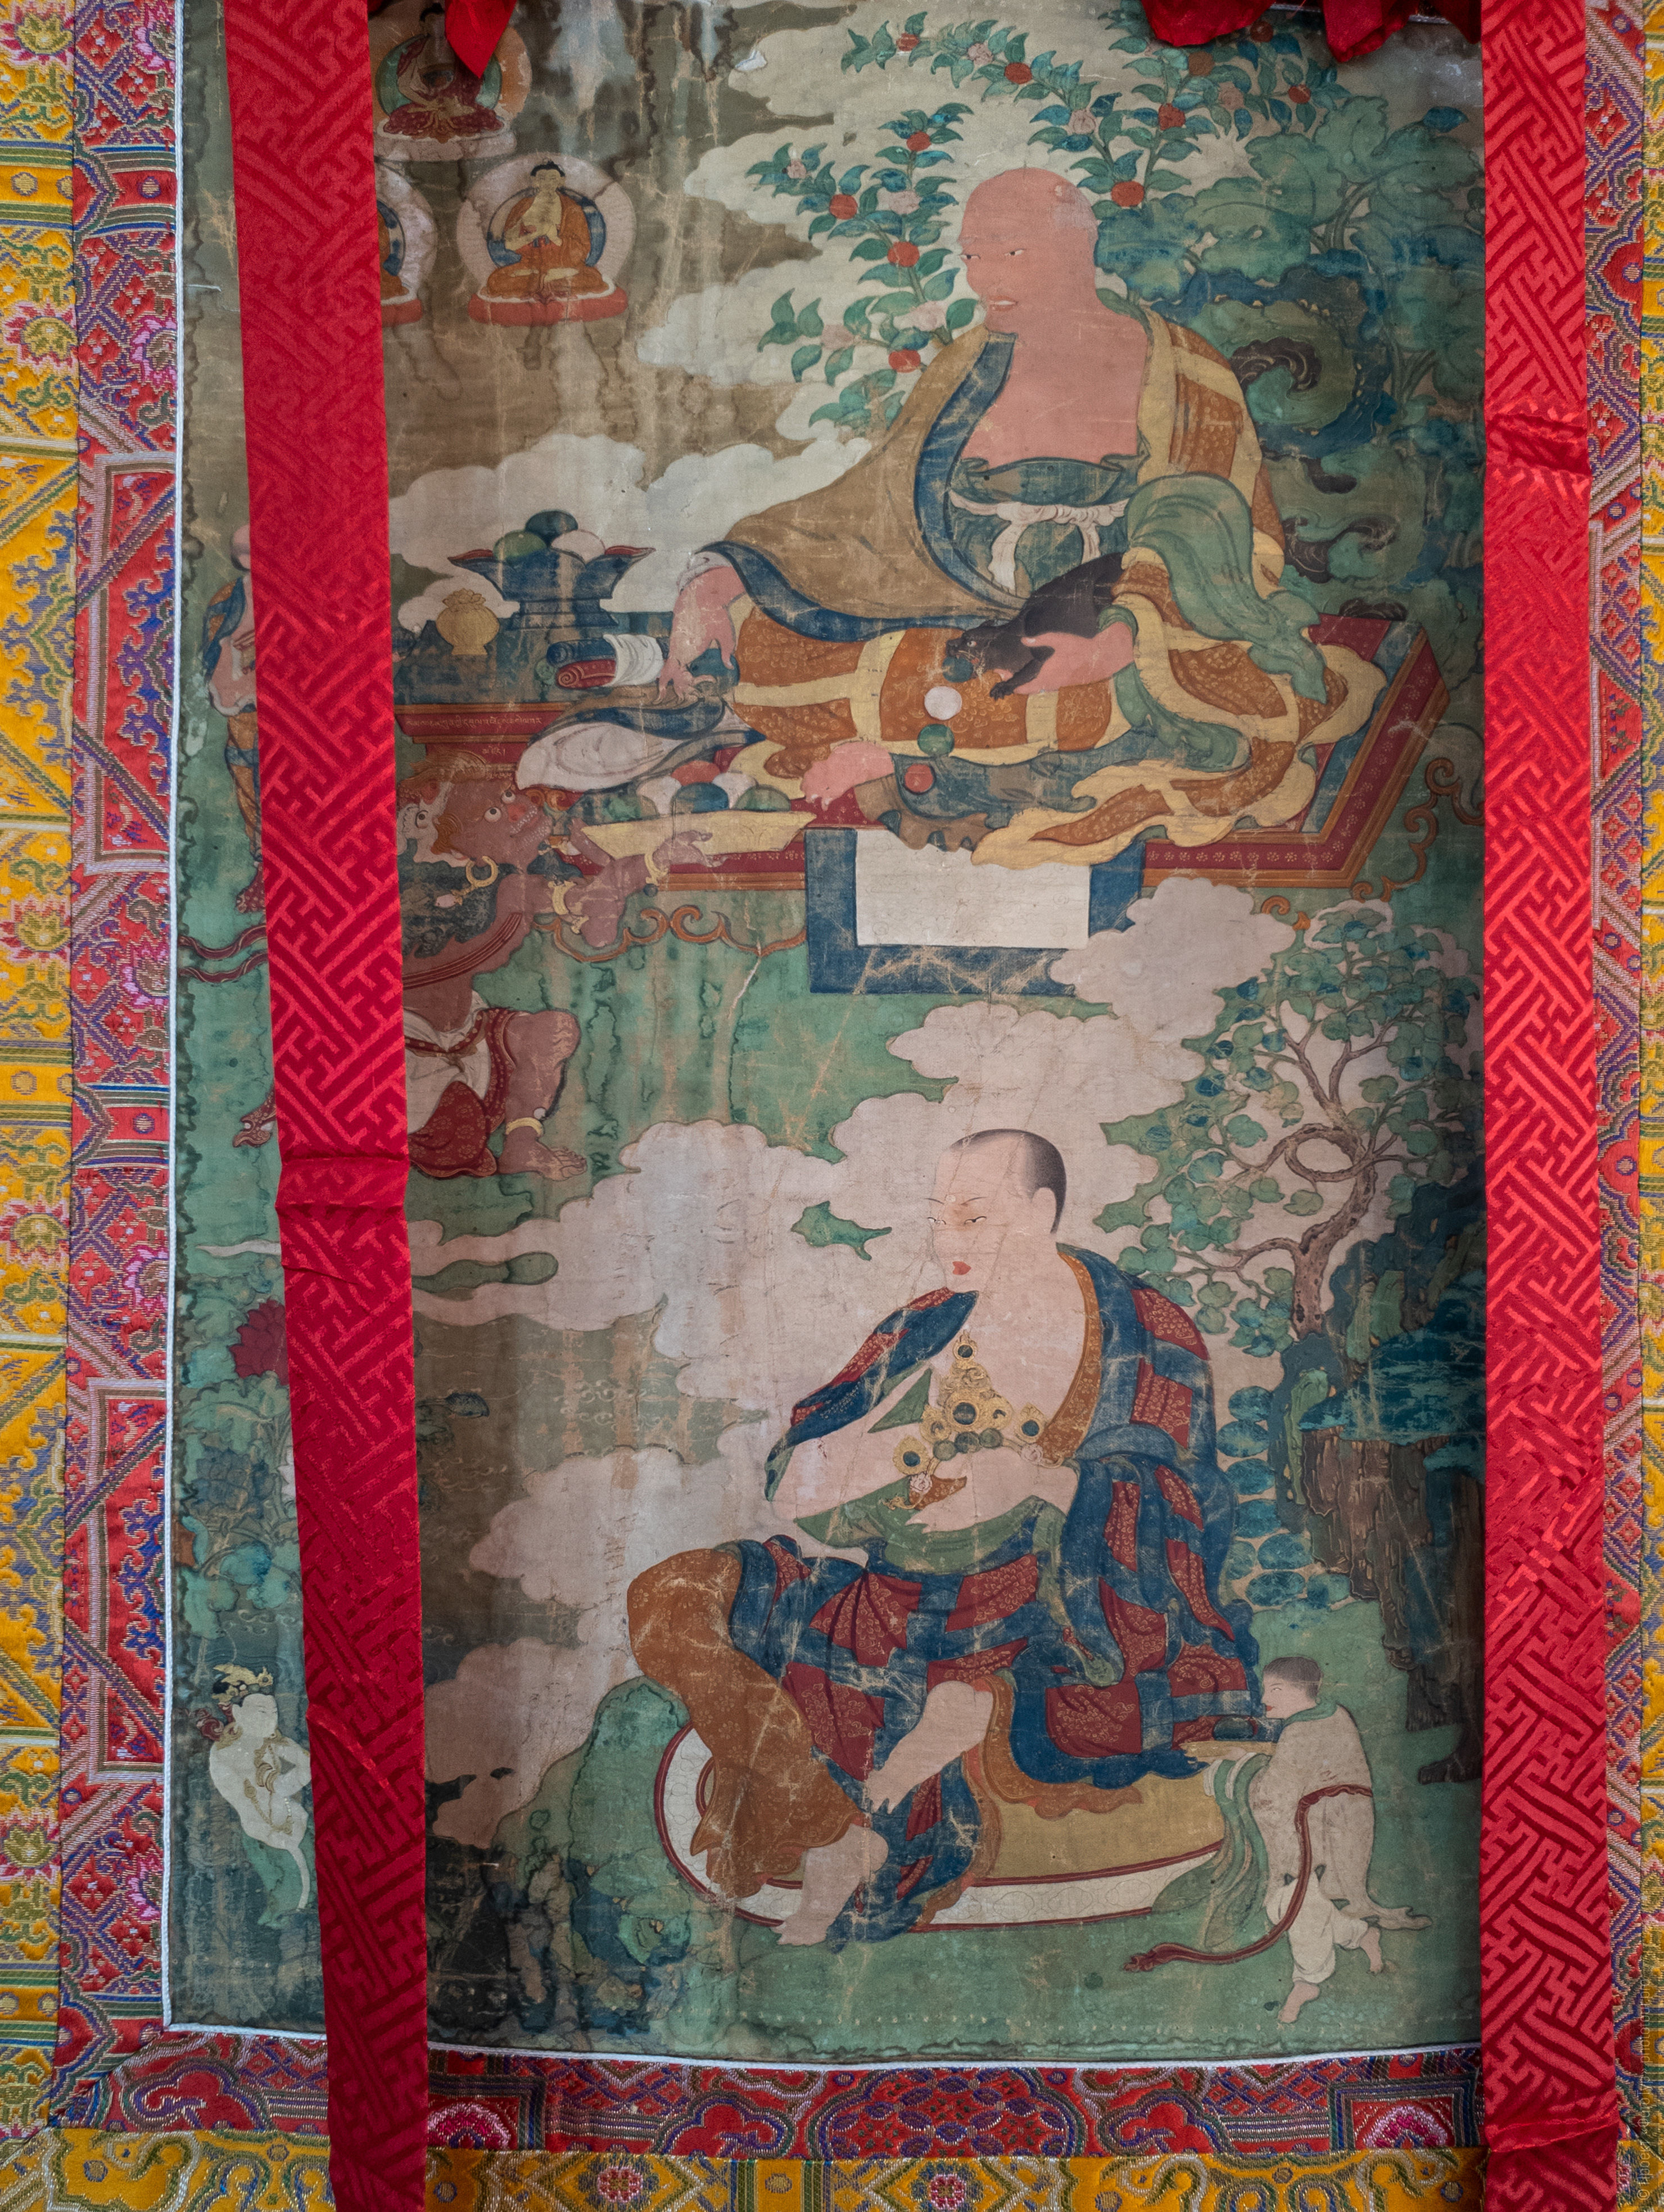 Его Святейшество Ринпоче Бакула I, тханка 15 века в монастыре Пьянг Гонпа, Ладакх.